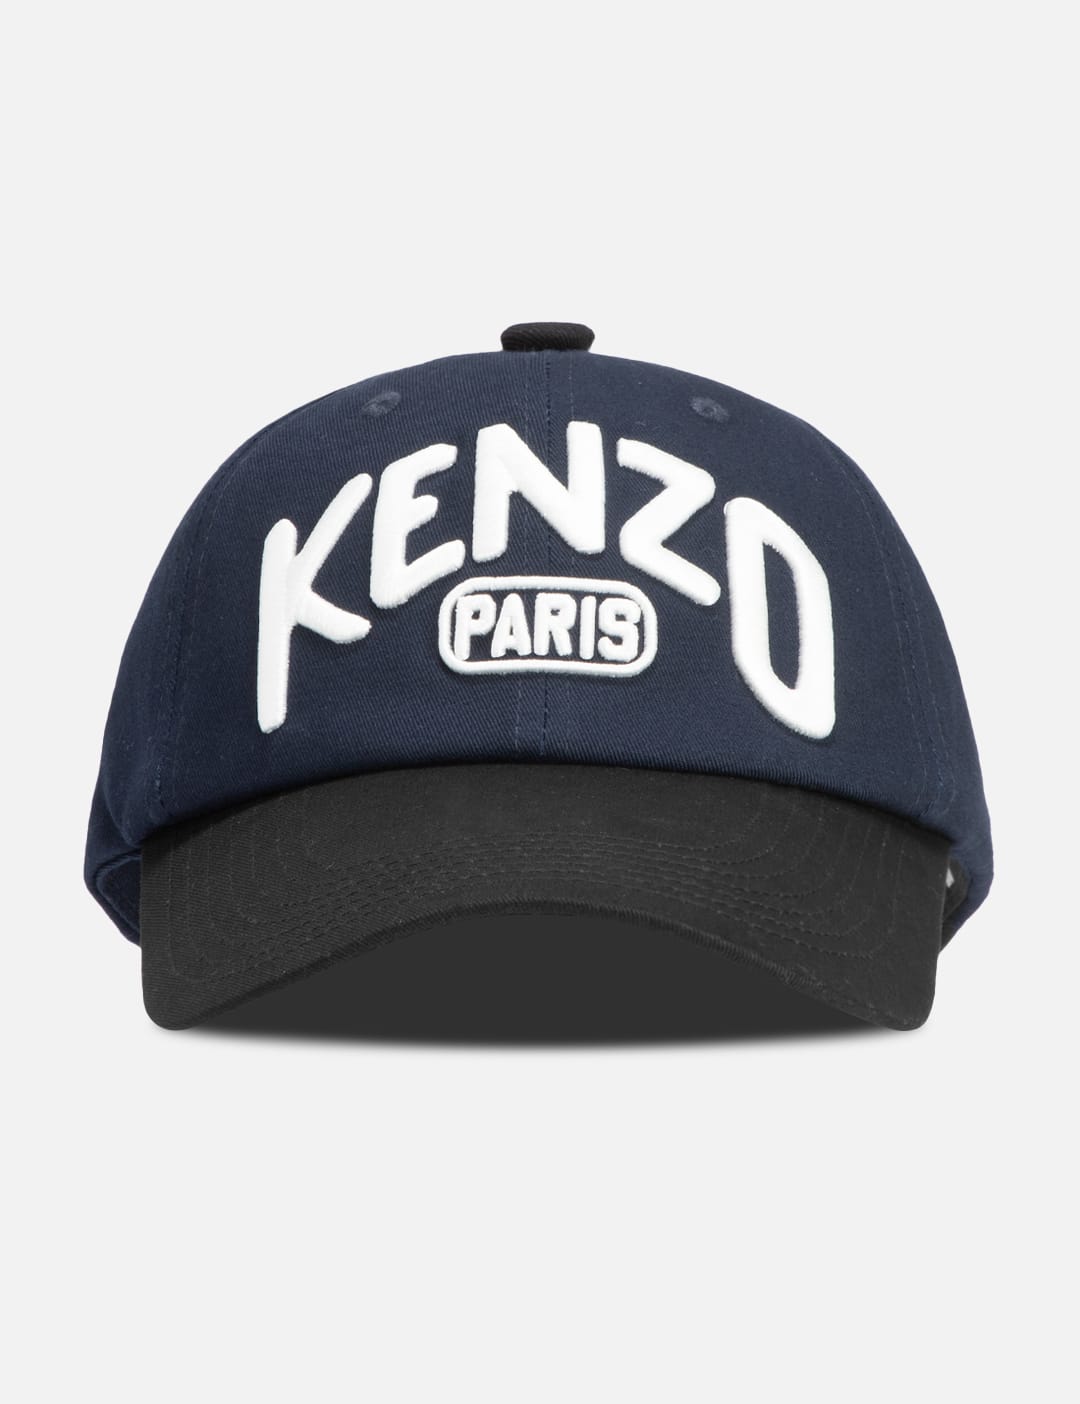 KENZO Paris Baseball Cap